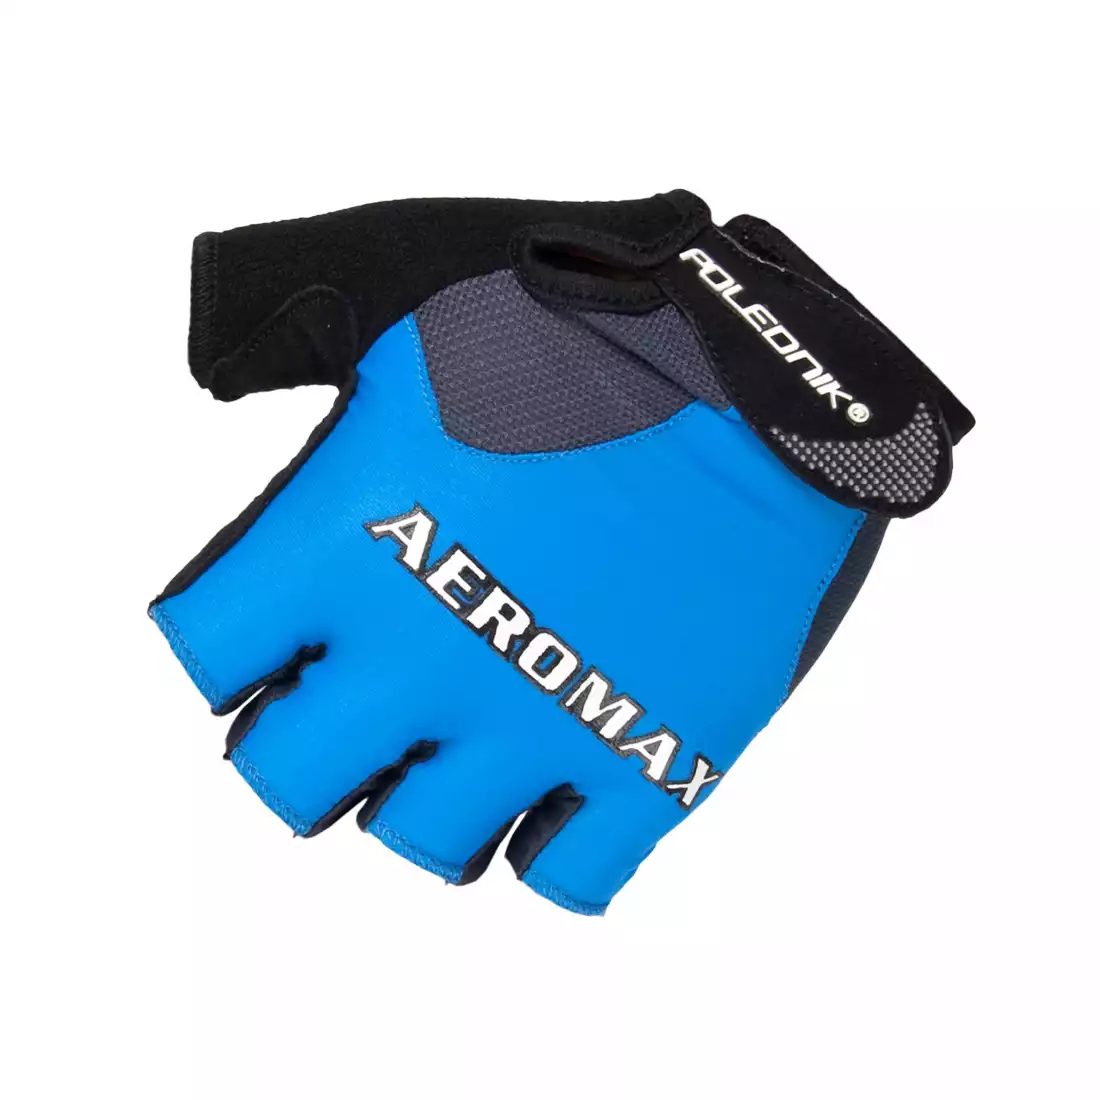 POLEDNIK AEROMAX rękawiczki rowerowe, kolor: Niebieski